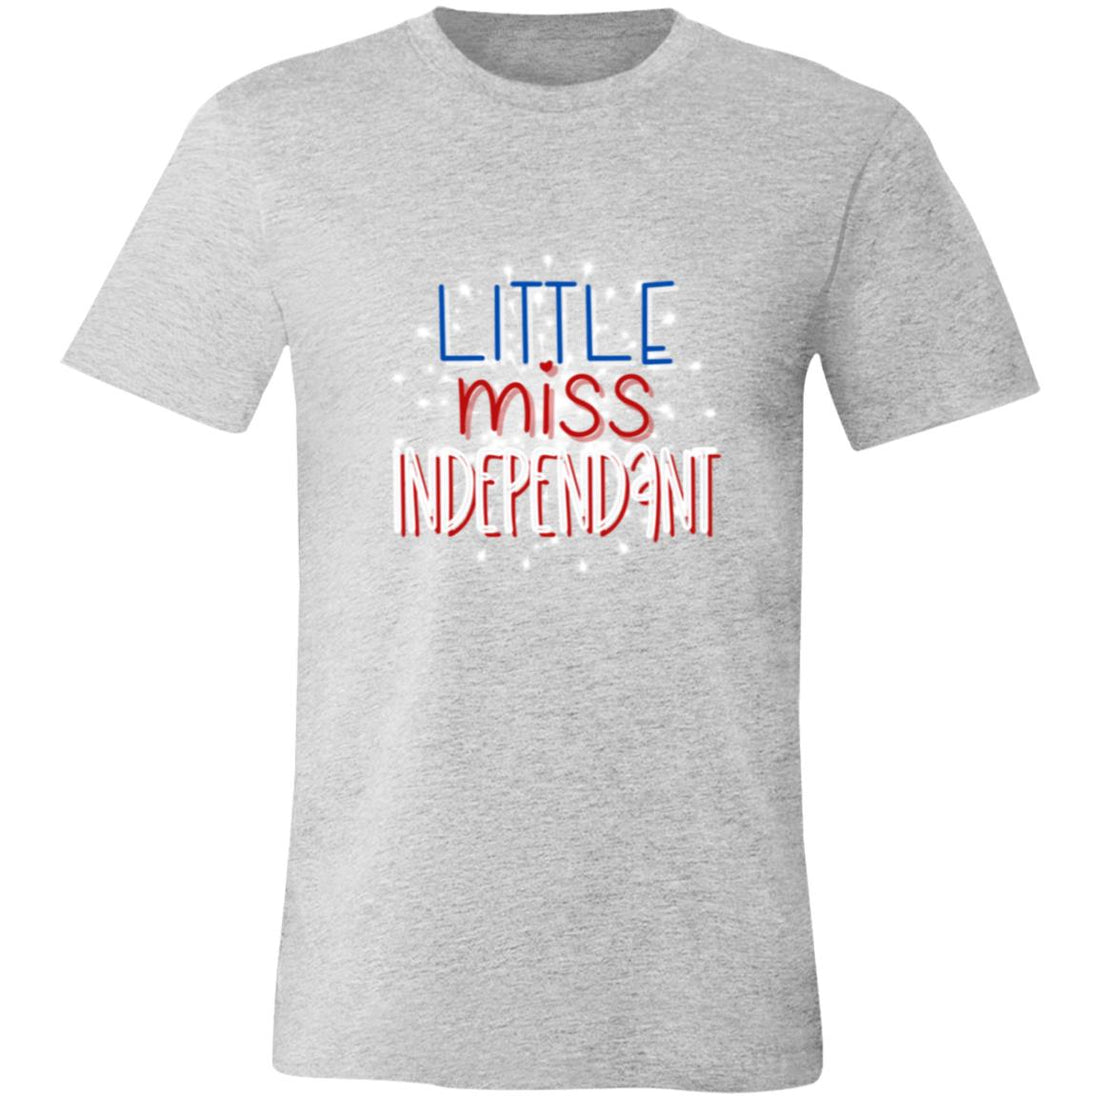 Little Miss Independant T-Shirt - T-Shirts - Positively Sassy - Little Miss Independant T-Shirt